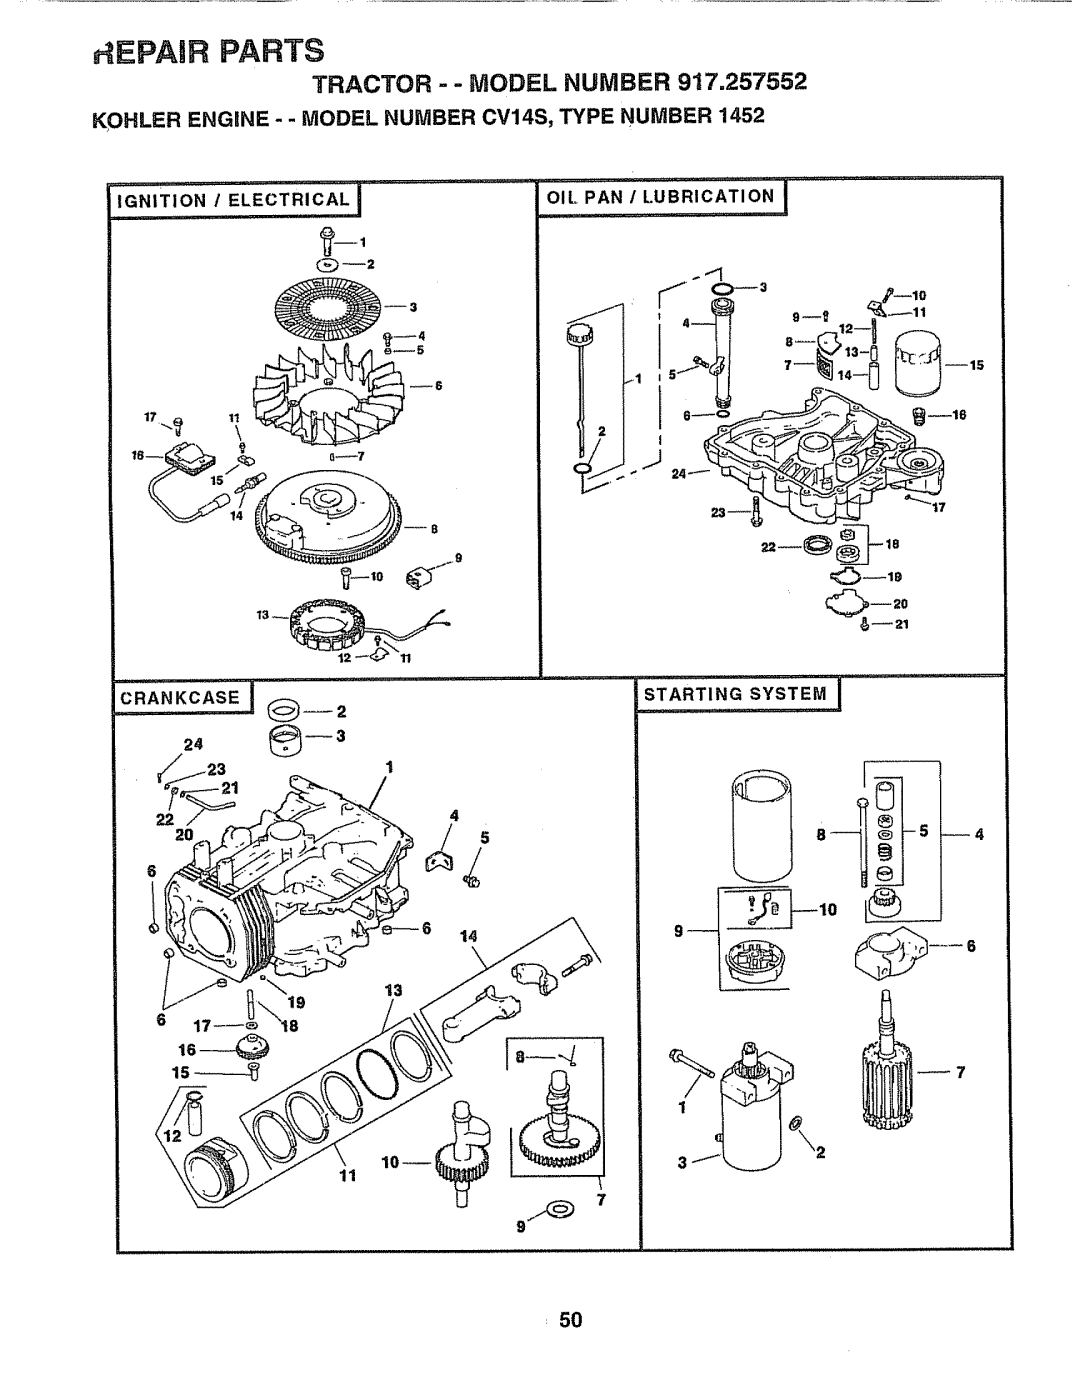 Sears 917.257552 S 2 -3J-,o, KOHLER ENGINE--MODEL NUMBER CV14S, TYPE NUMBER, Crankcase, Starting System, 224 20 13, i,iii 